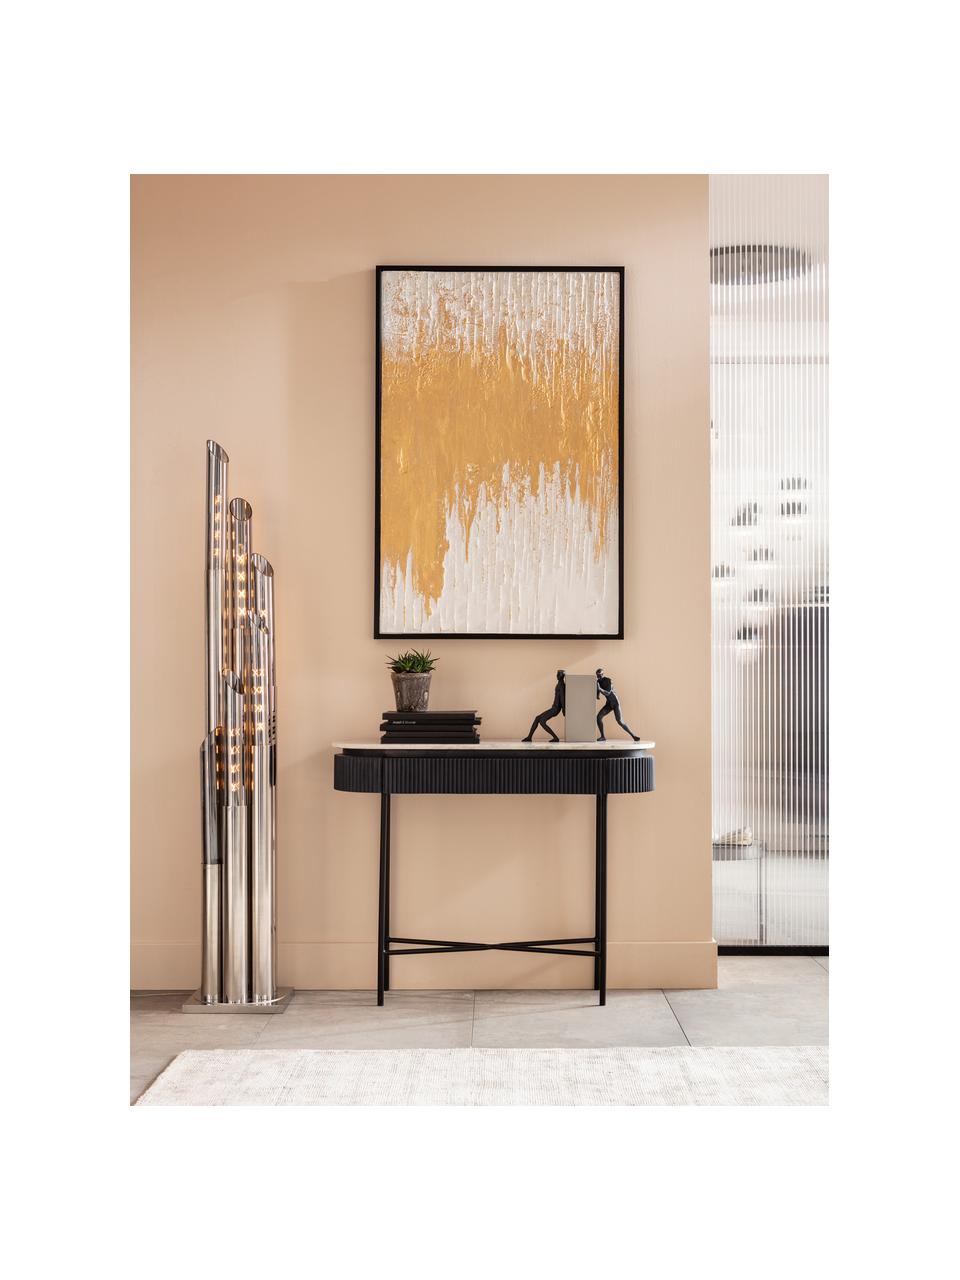 Handbeschilderde canvasdoek Abstract, Frame: dennenhout, Goudkleurig, zwart, B 80 x H 120 cm